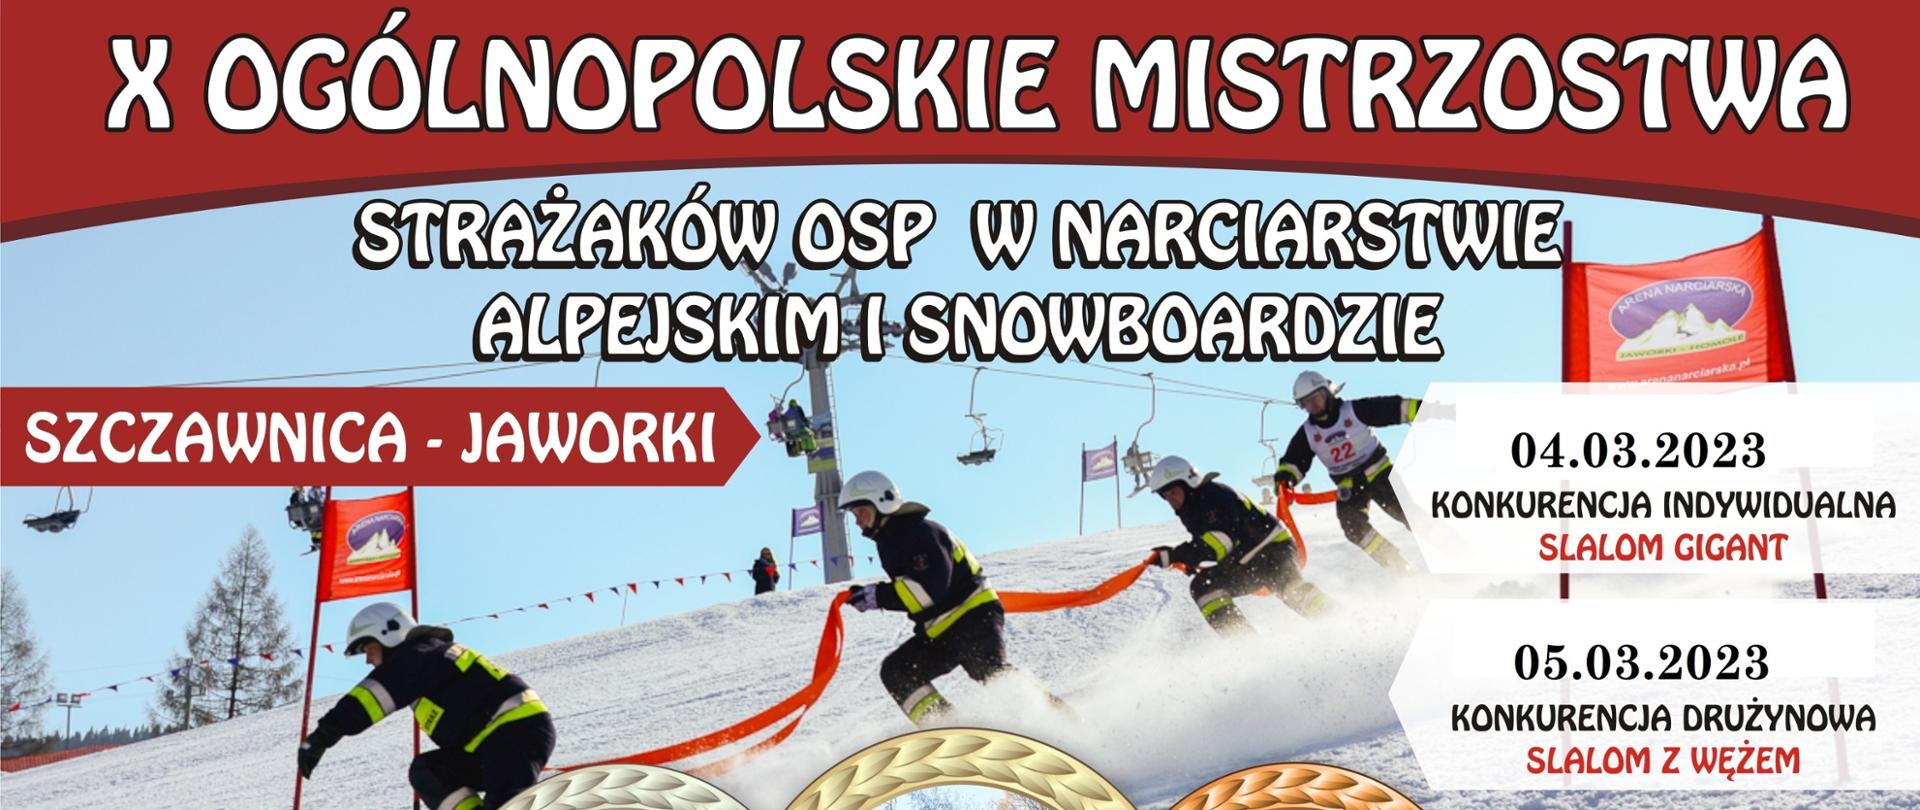 Zdjęcie przedstawia plakat promujący nadchodzące zawody strażaków OSP a konkretnie - X Ogólnopolskie Mistrzostwa Strażaków OSP w Narciarstwie Alpejskim i Snowboardzie.